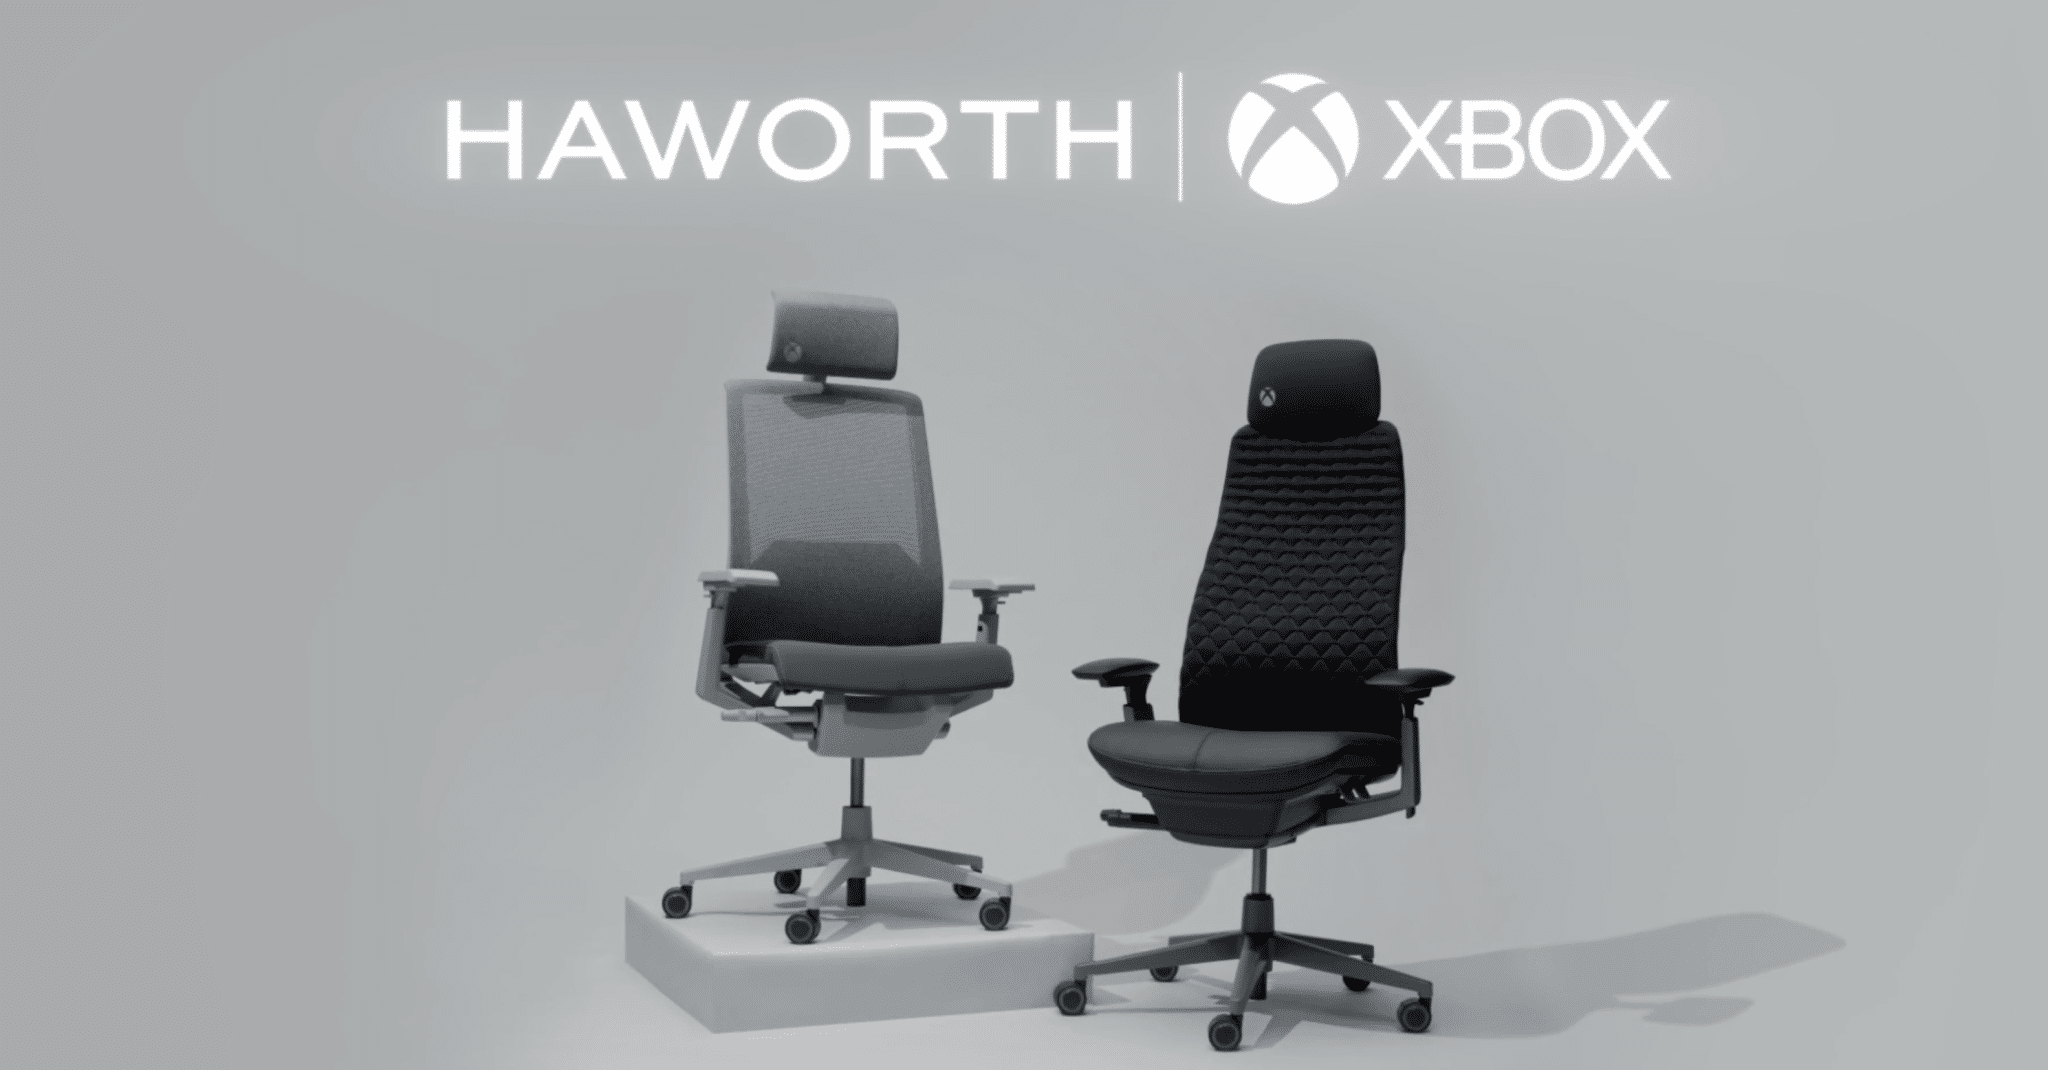 Xbox: in arrivo le sedie da gaming in collaborazione con Haworth 4